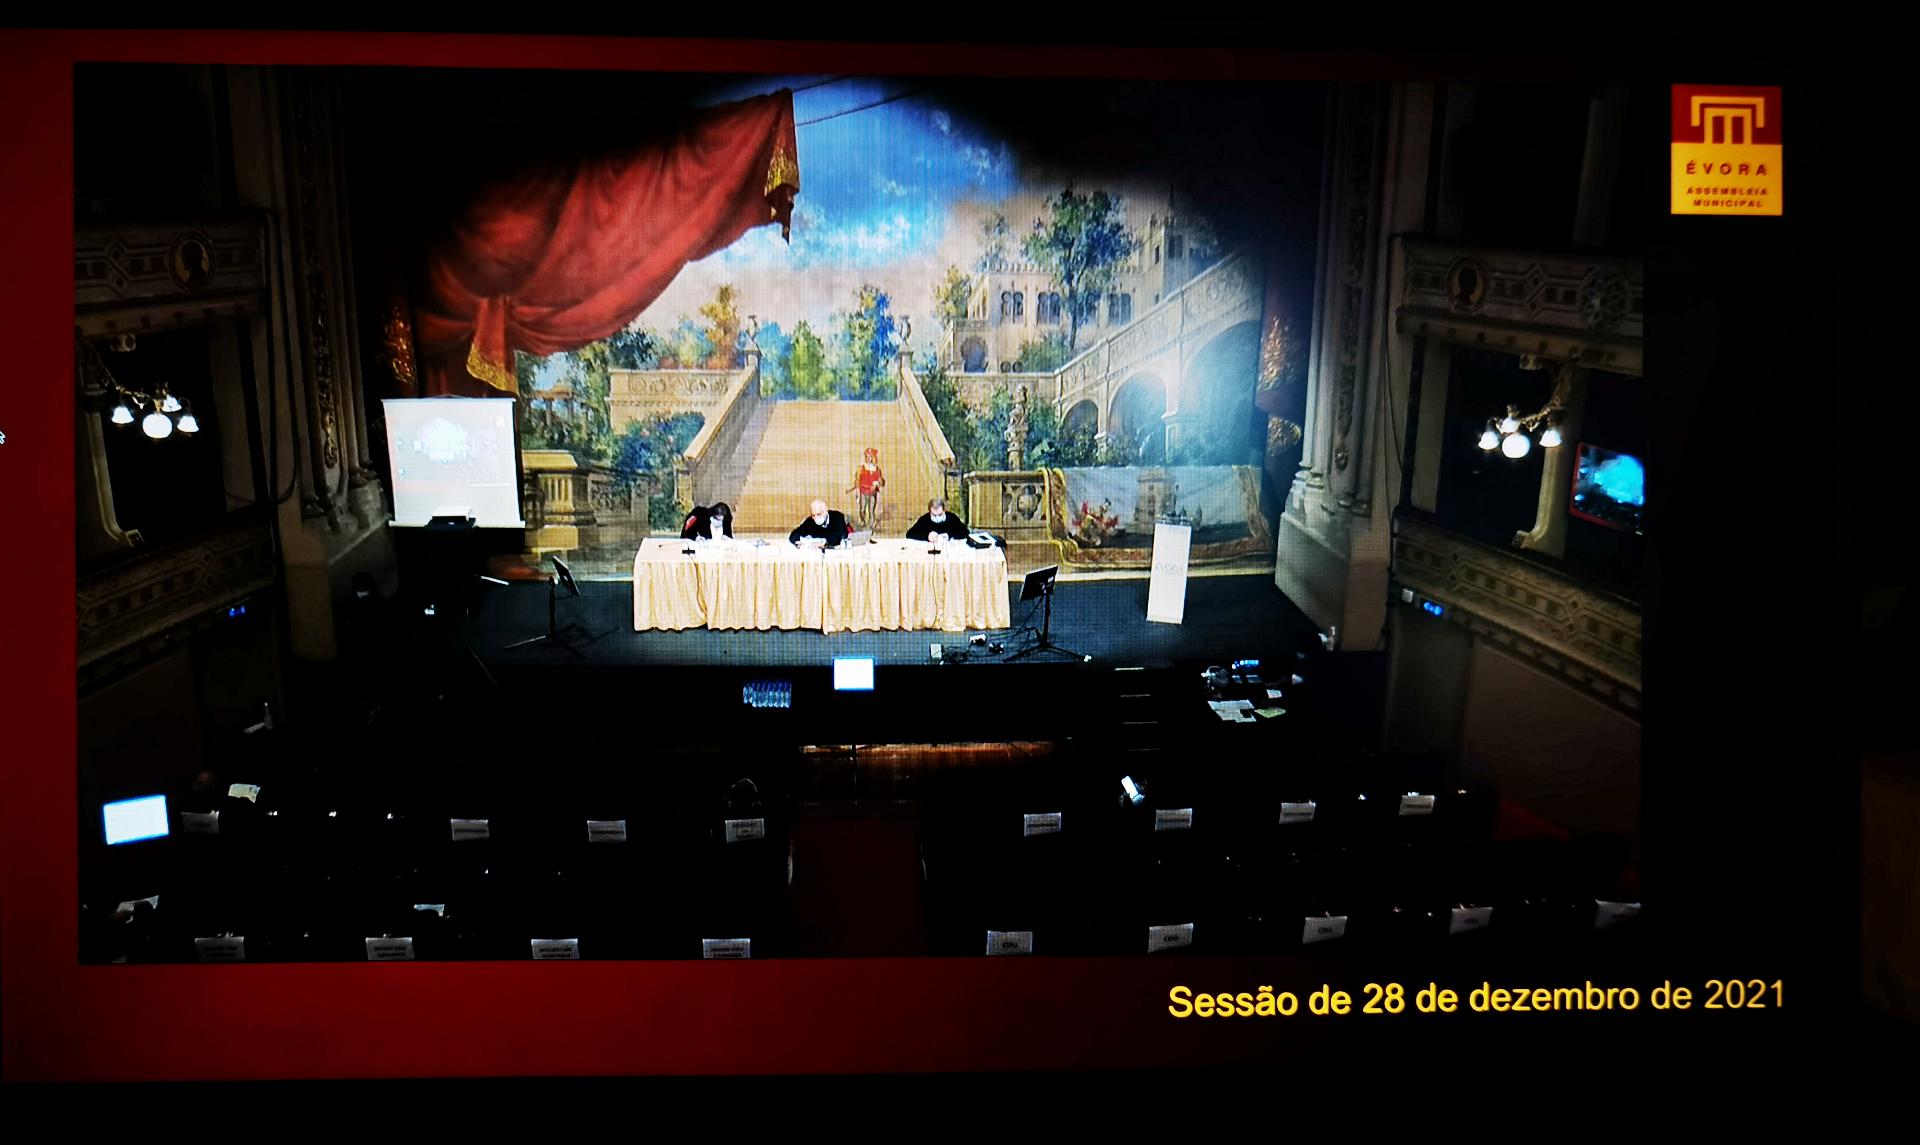 (Português) Sessão da Assembleia Municipal de Évora de 28 de Dezembro de 2021